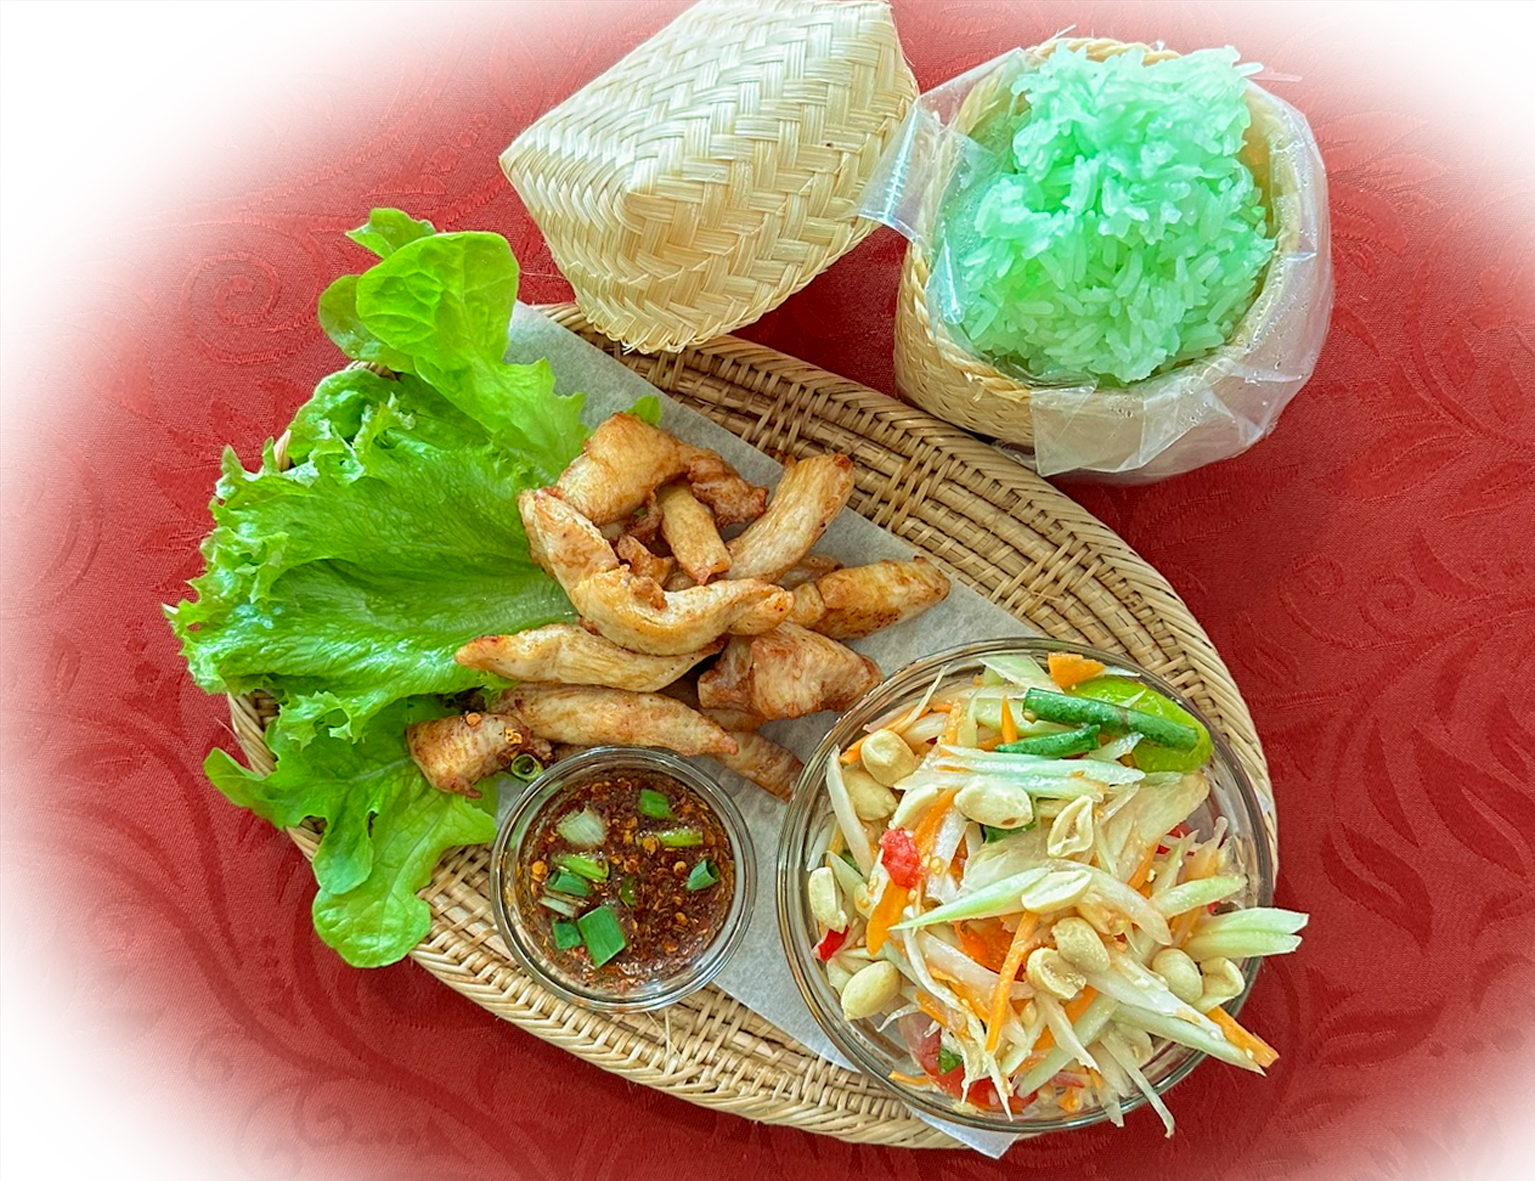 Diese Thai-Speise kombiniert aromatischen Klebreis mit knusprig frittiertem Hühnchen, dazu gibt es e